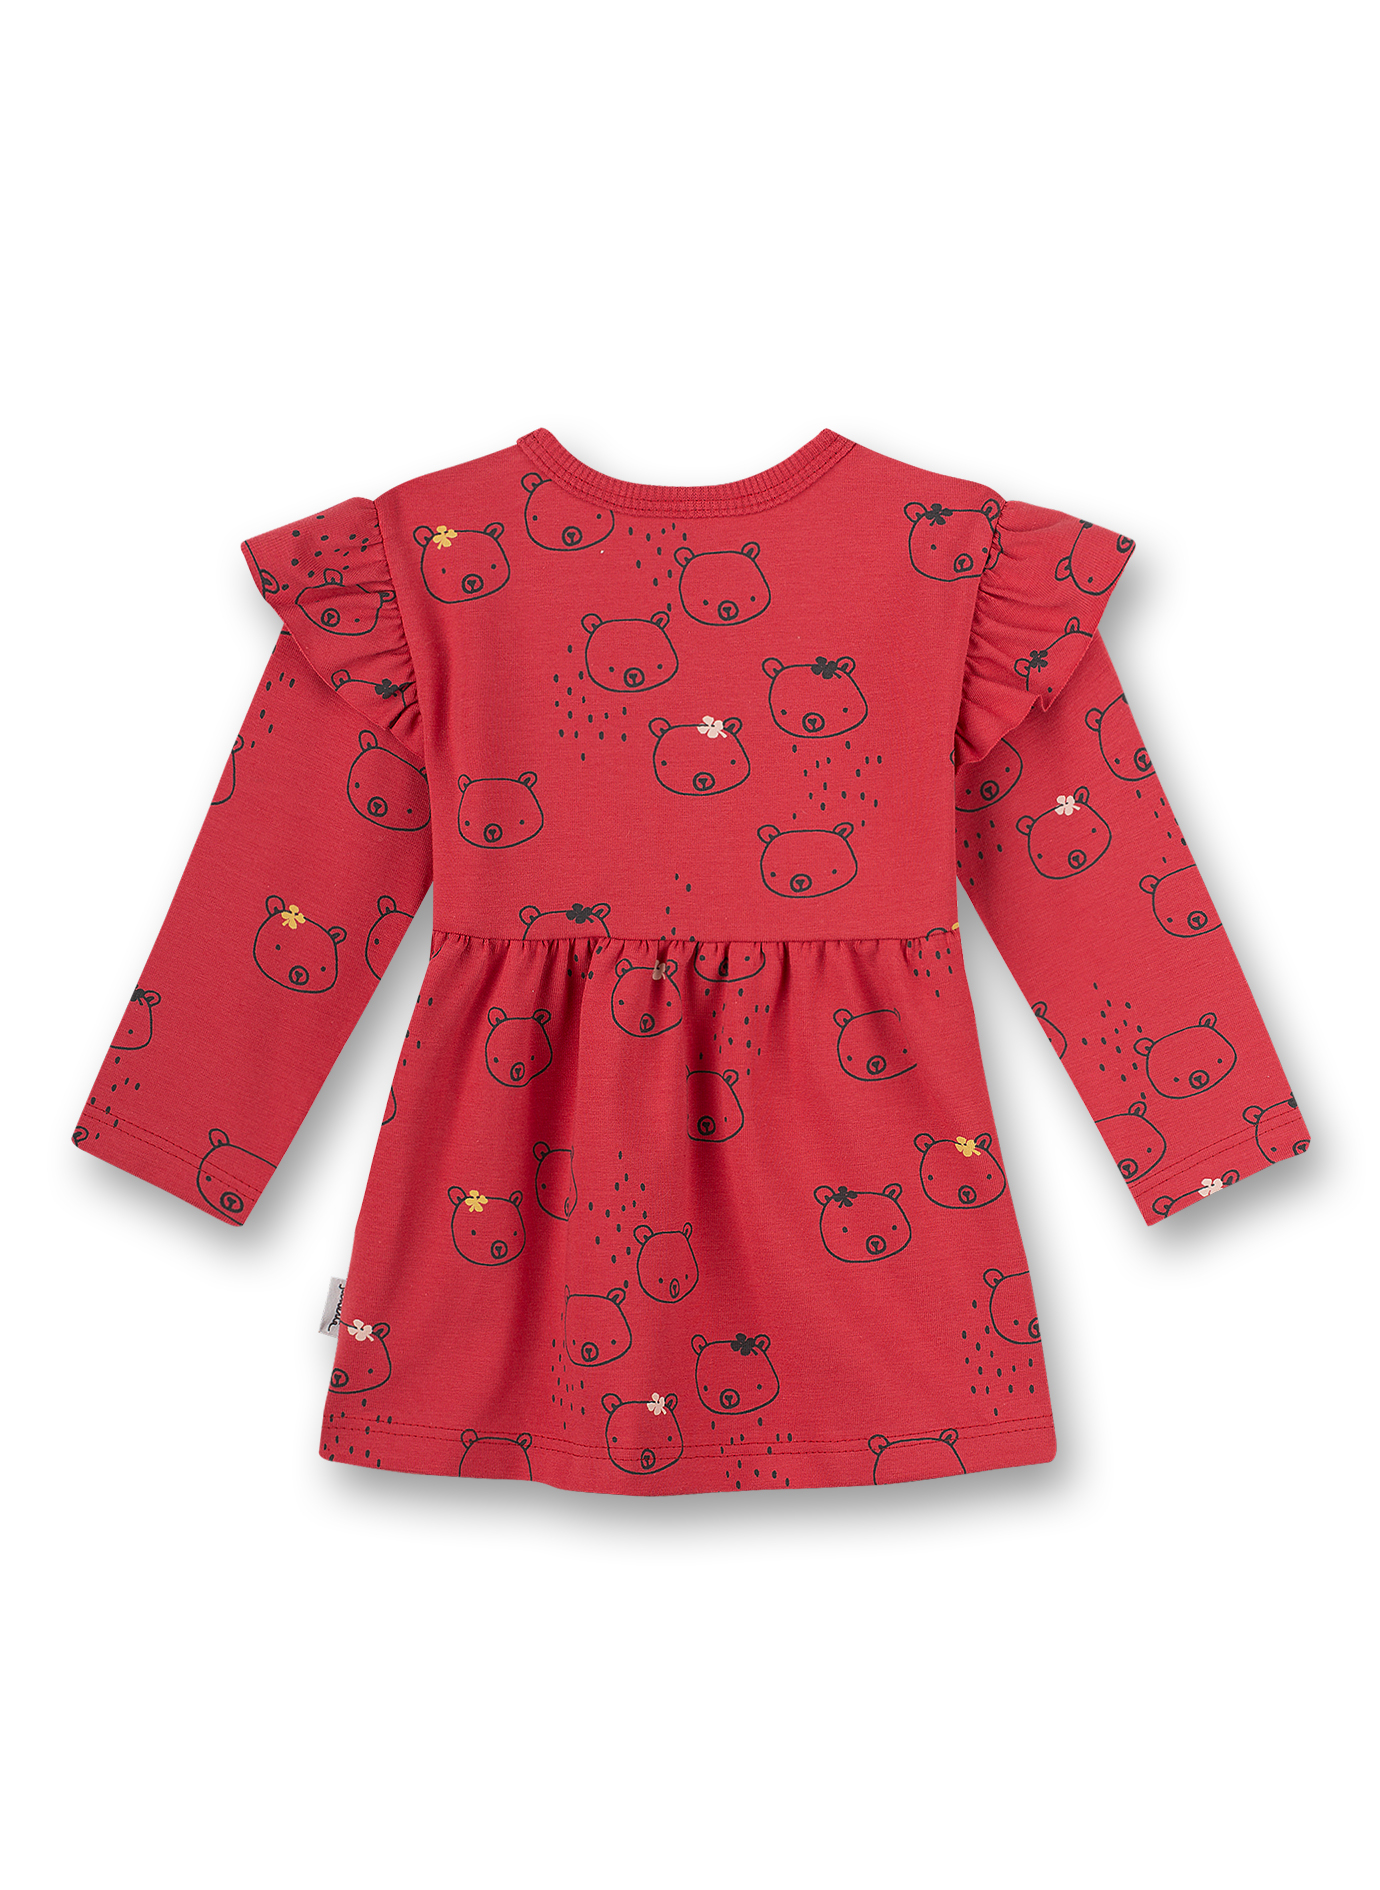 Mädchen-Kleid Rot Little Bear